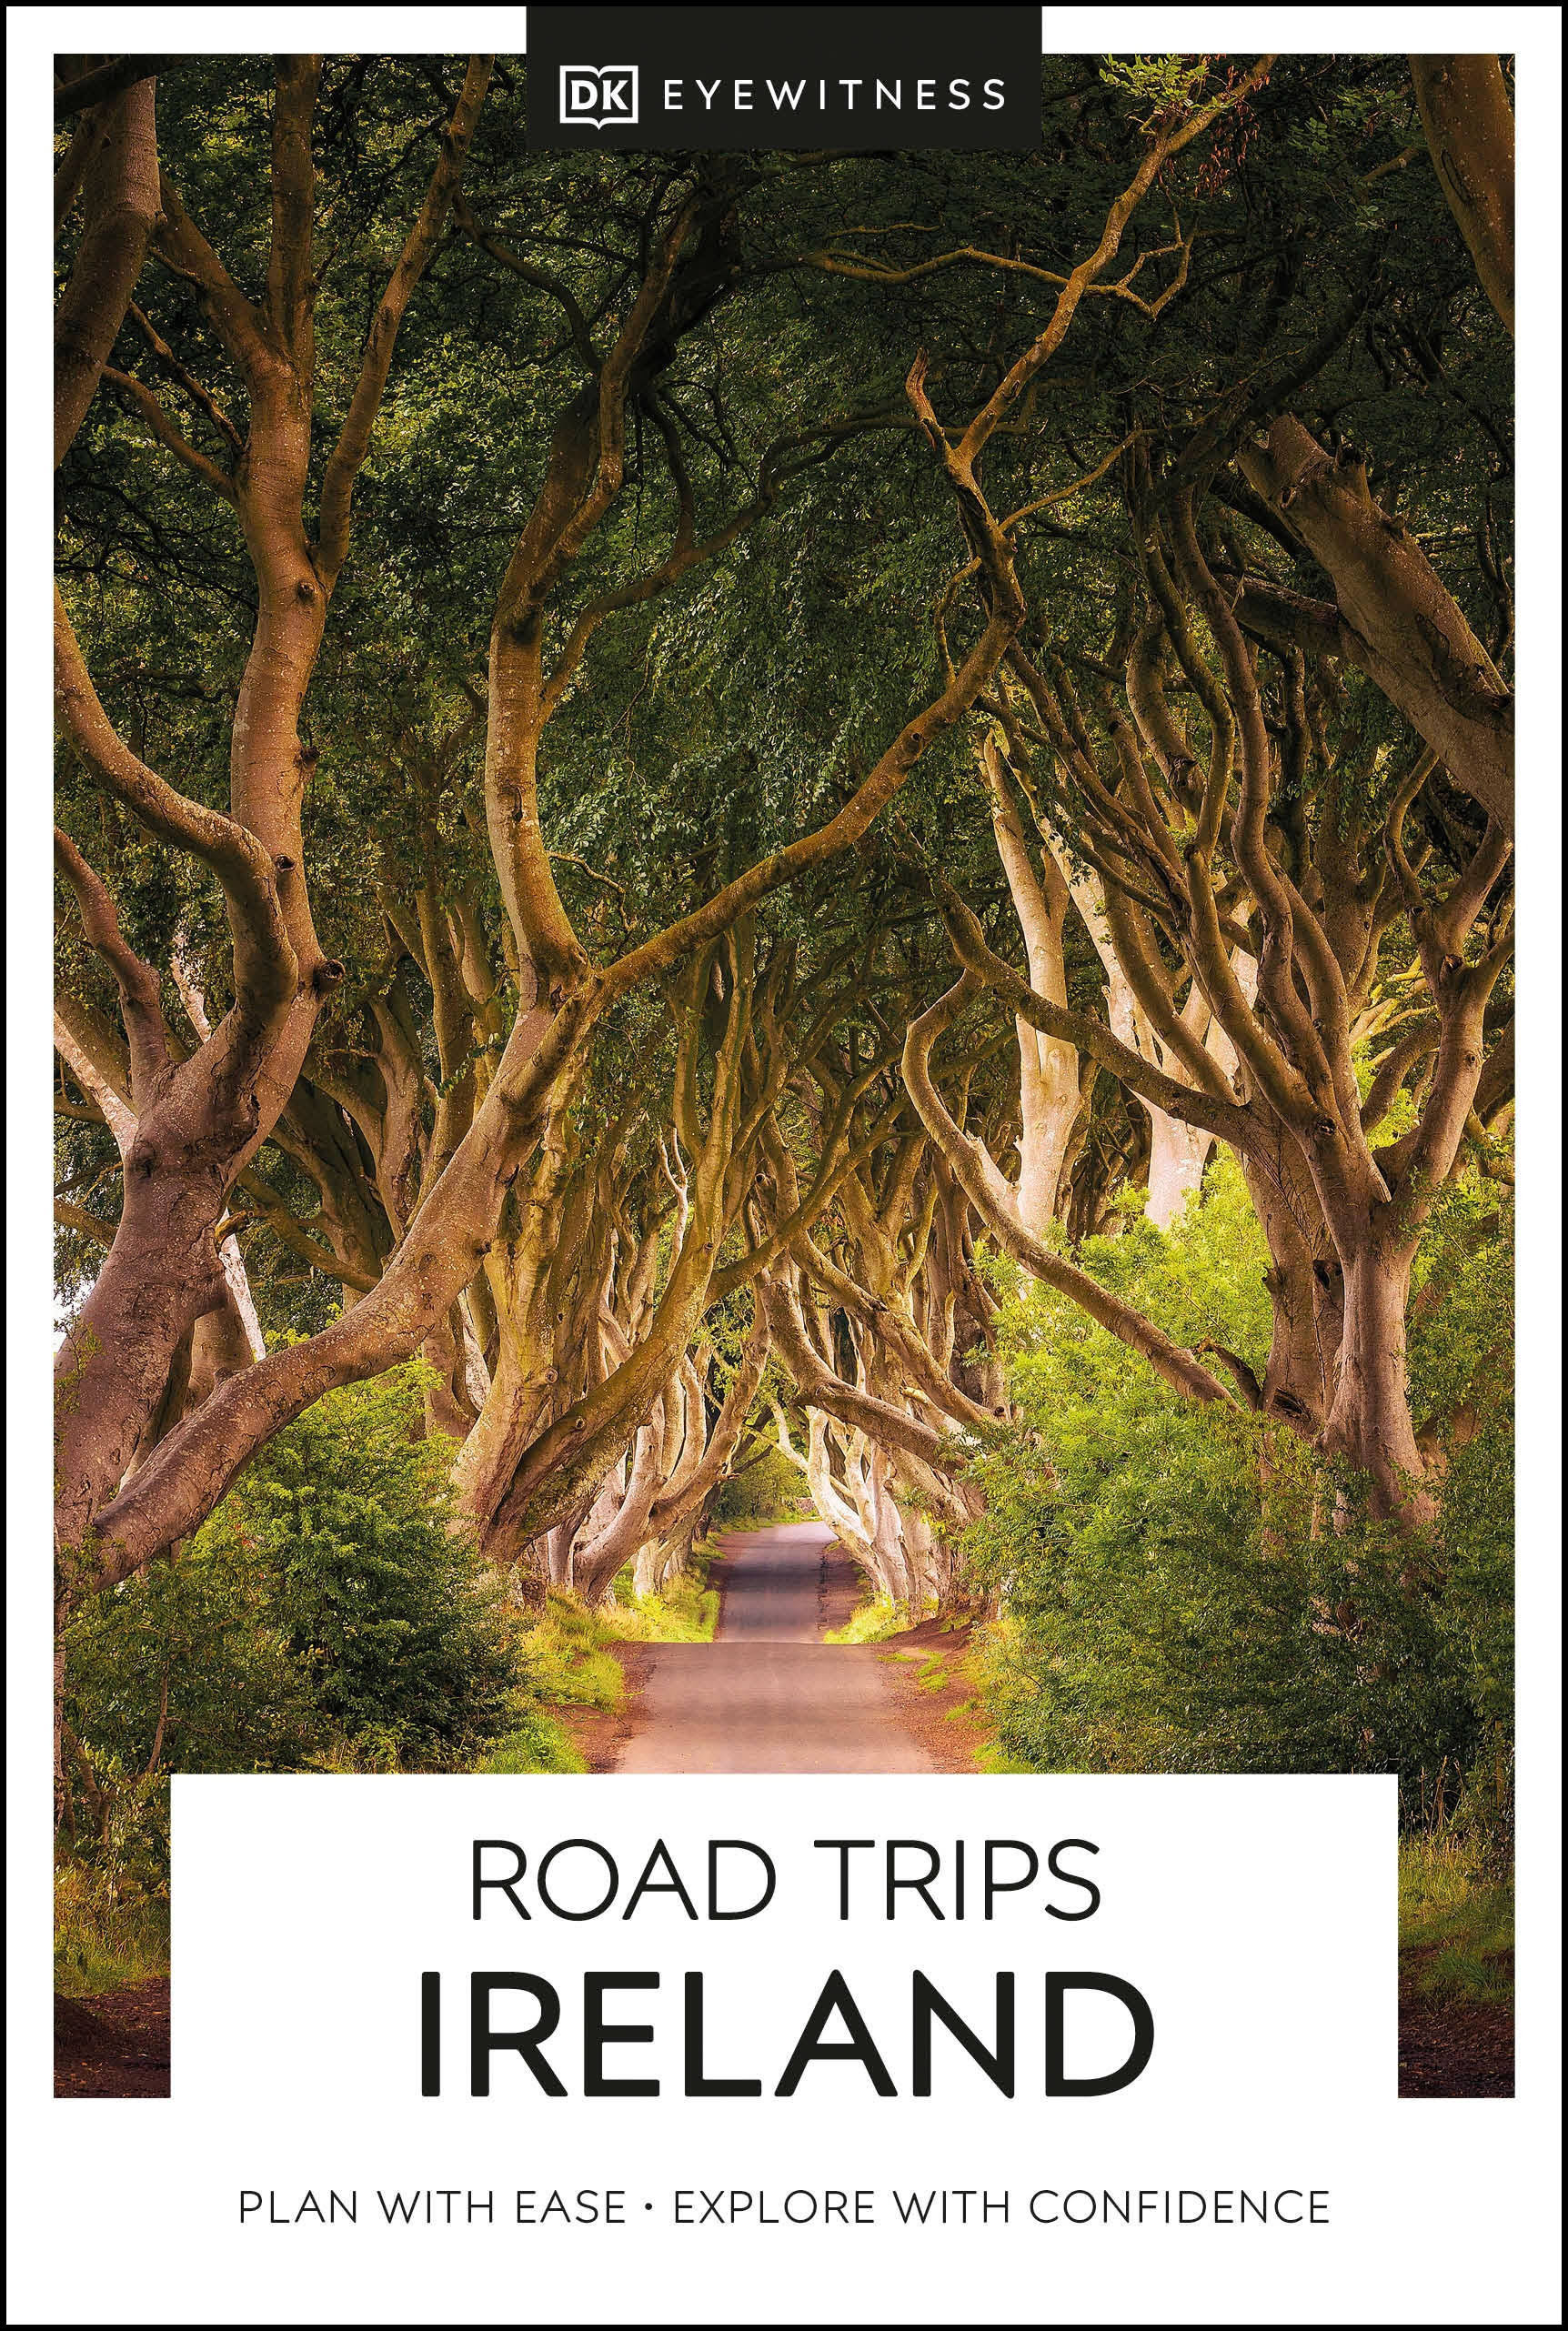 Dk Eyewitness Road Trips Ireland by Dk Eyewitness